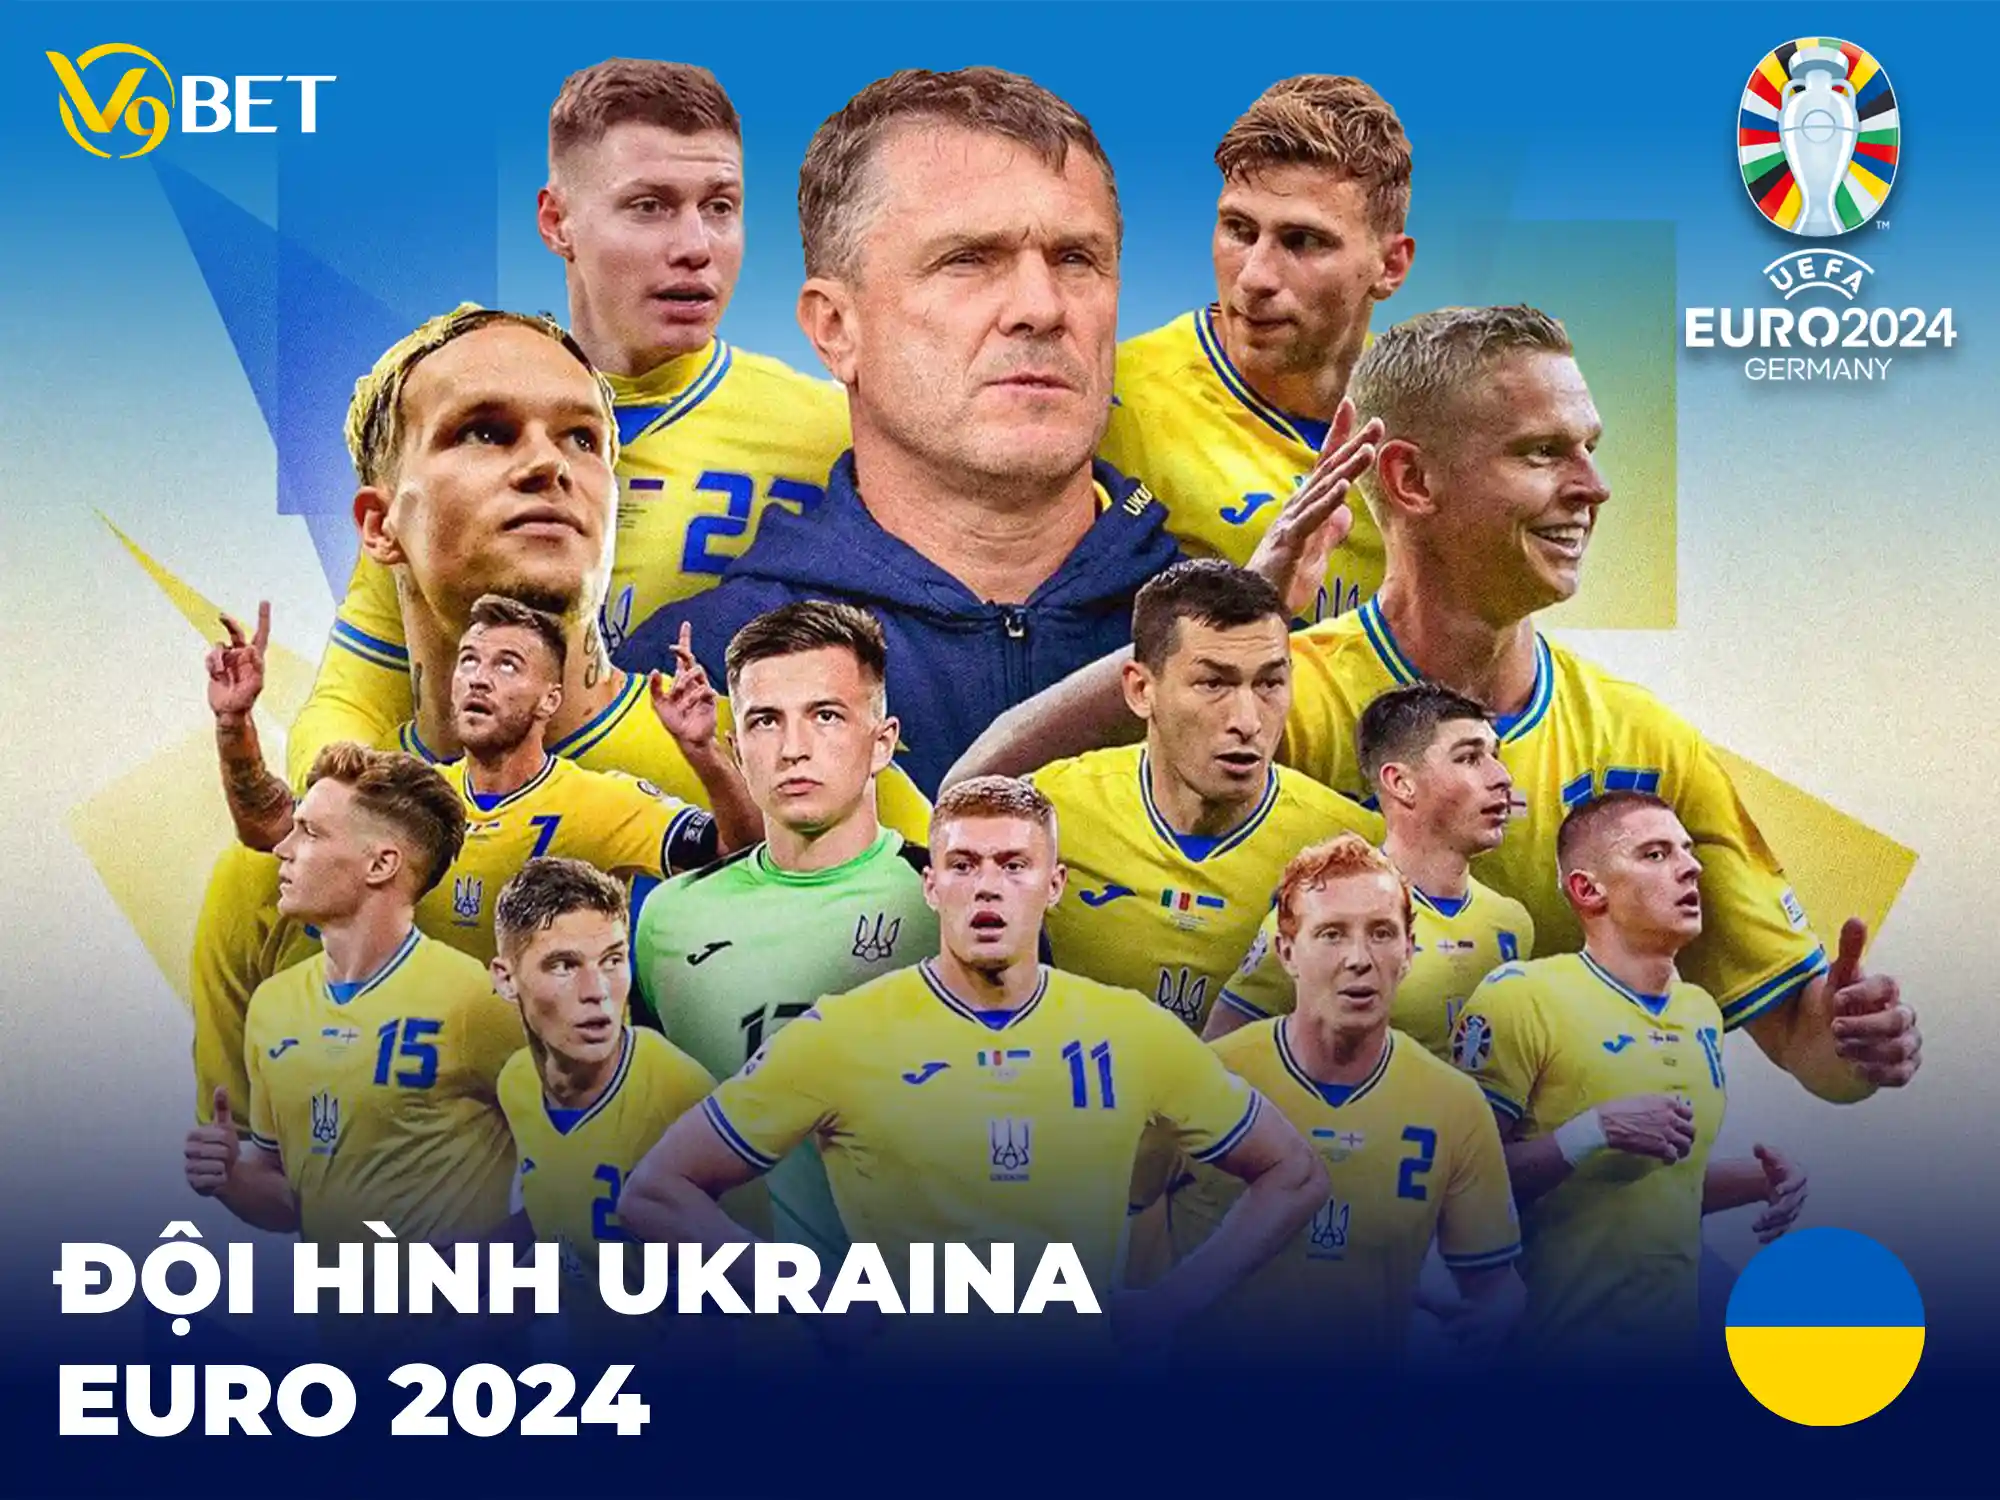 Đội tuyển Ukraine và đội hình dự Euro dự kiến trong năm 2024